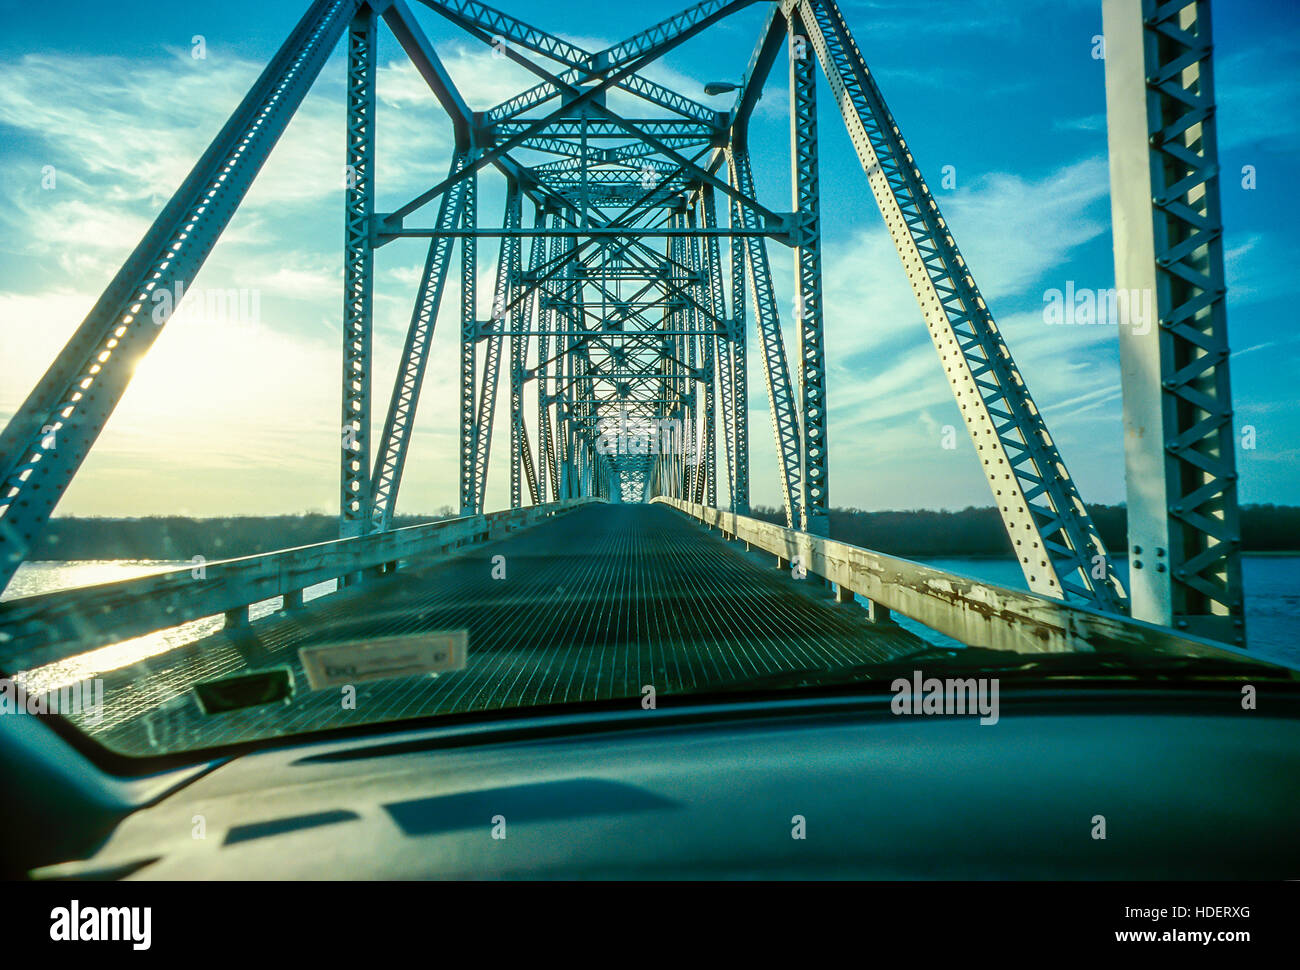 Savanna Bridge spanning the Mississippi River in Savanna, Illinois, USA Stock Photo